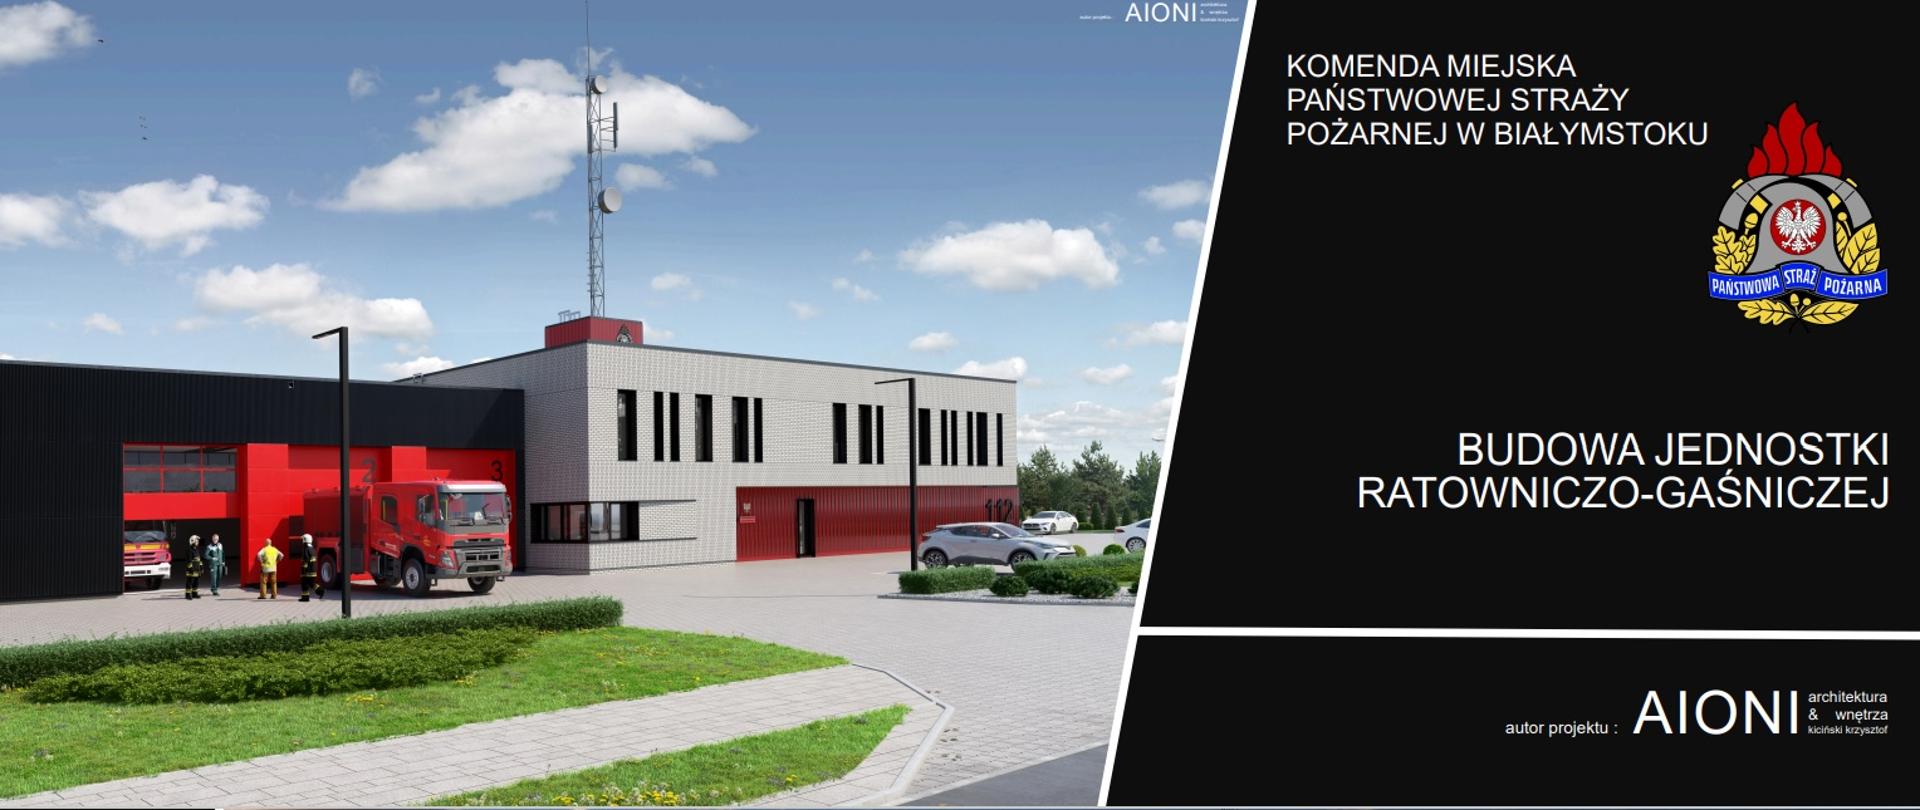 Budowa Jednostki Ratowniczo-Gaśniczej w Białymstoku